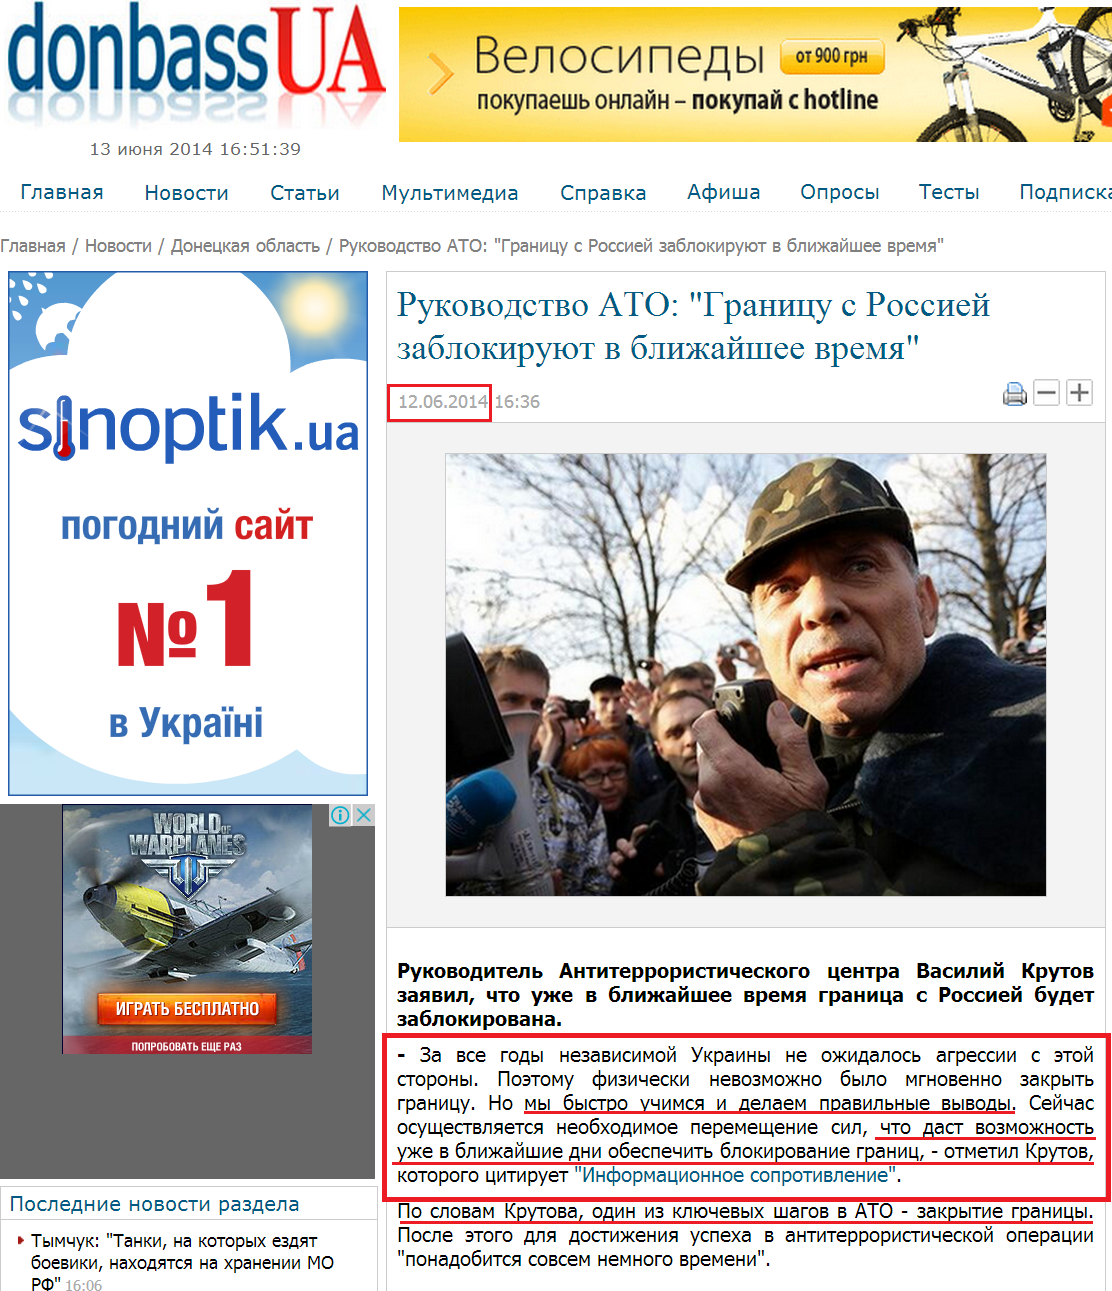 http://donbass.ua/news/region/2014/06/12/rukovodstvo-ato-granicu-s-rossiei-zablokirujut-v-blizhaishee-vremja.html